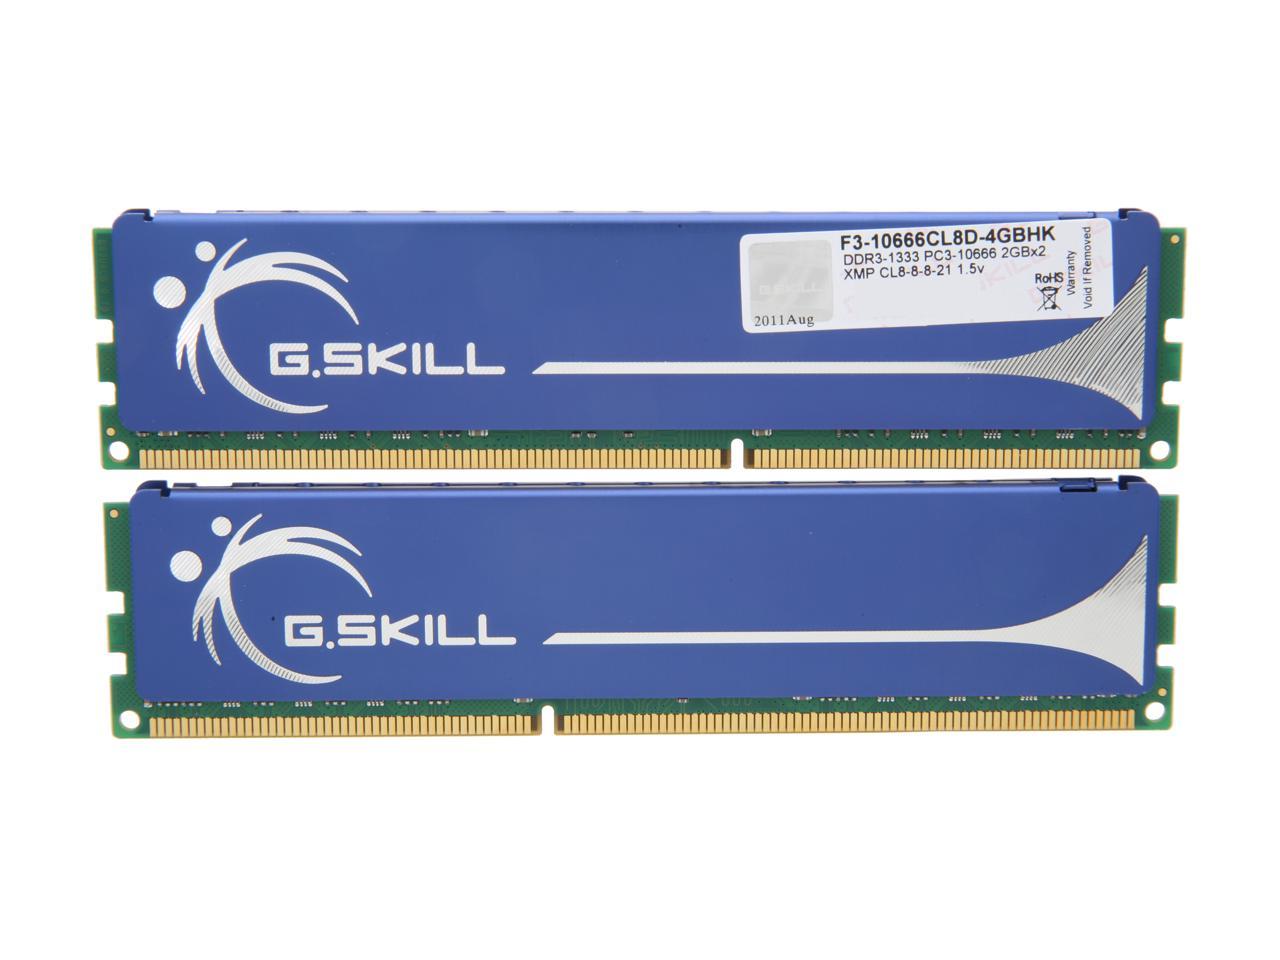 G.SKILL 4GB (2 x 2GB) 240-Pin DDR3 SDRAM DDR3 1333 (PC3 10666) Dual Channel Kit Desktop Memory Model F3-10666CL8D-4GBHK